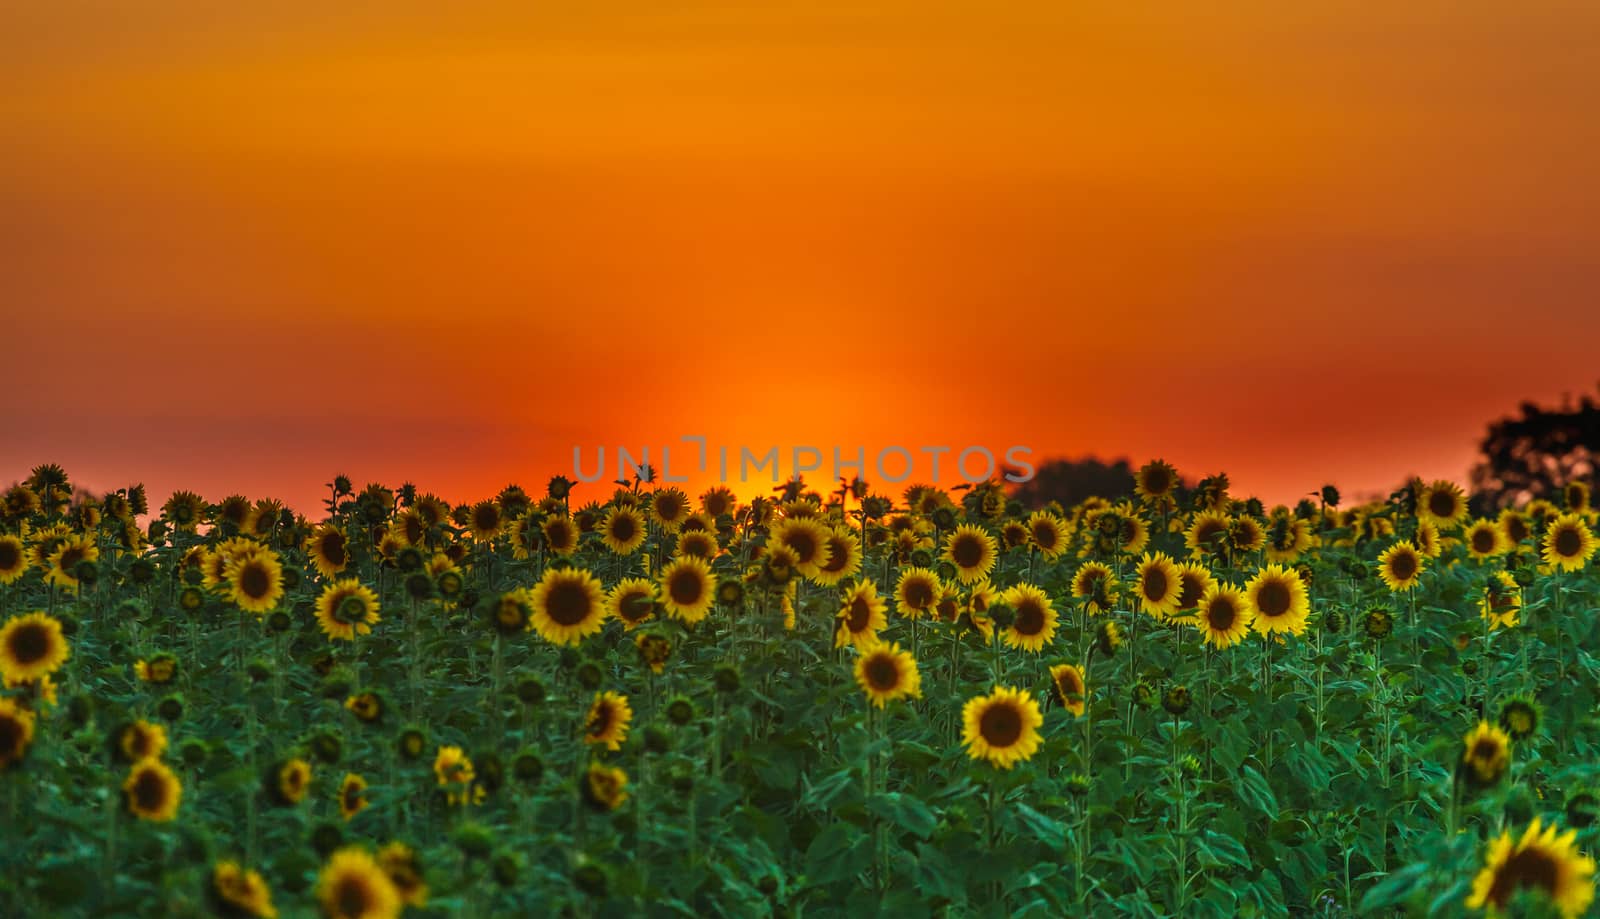 Field of sunflowers by fogen